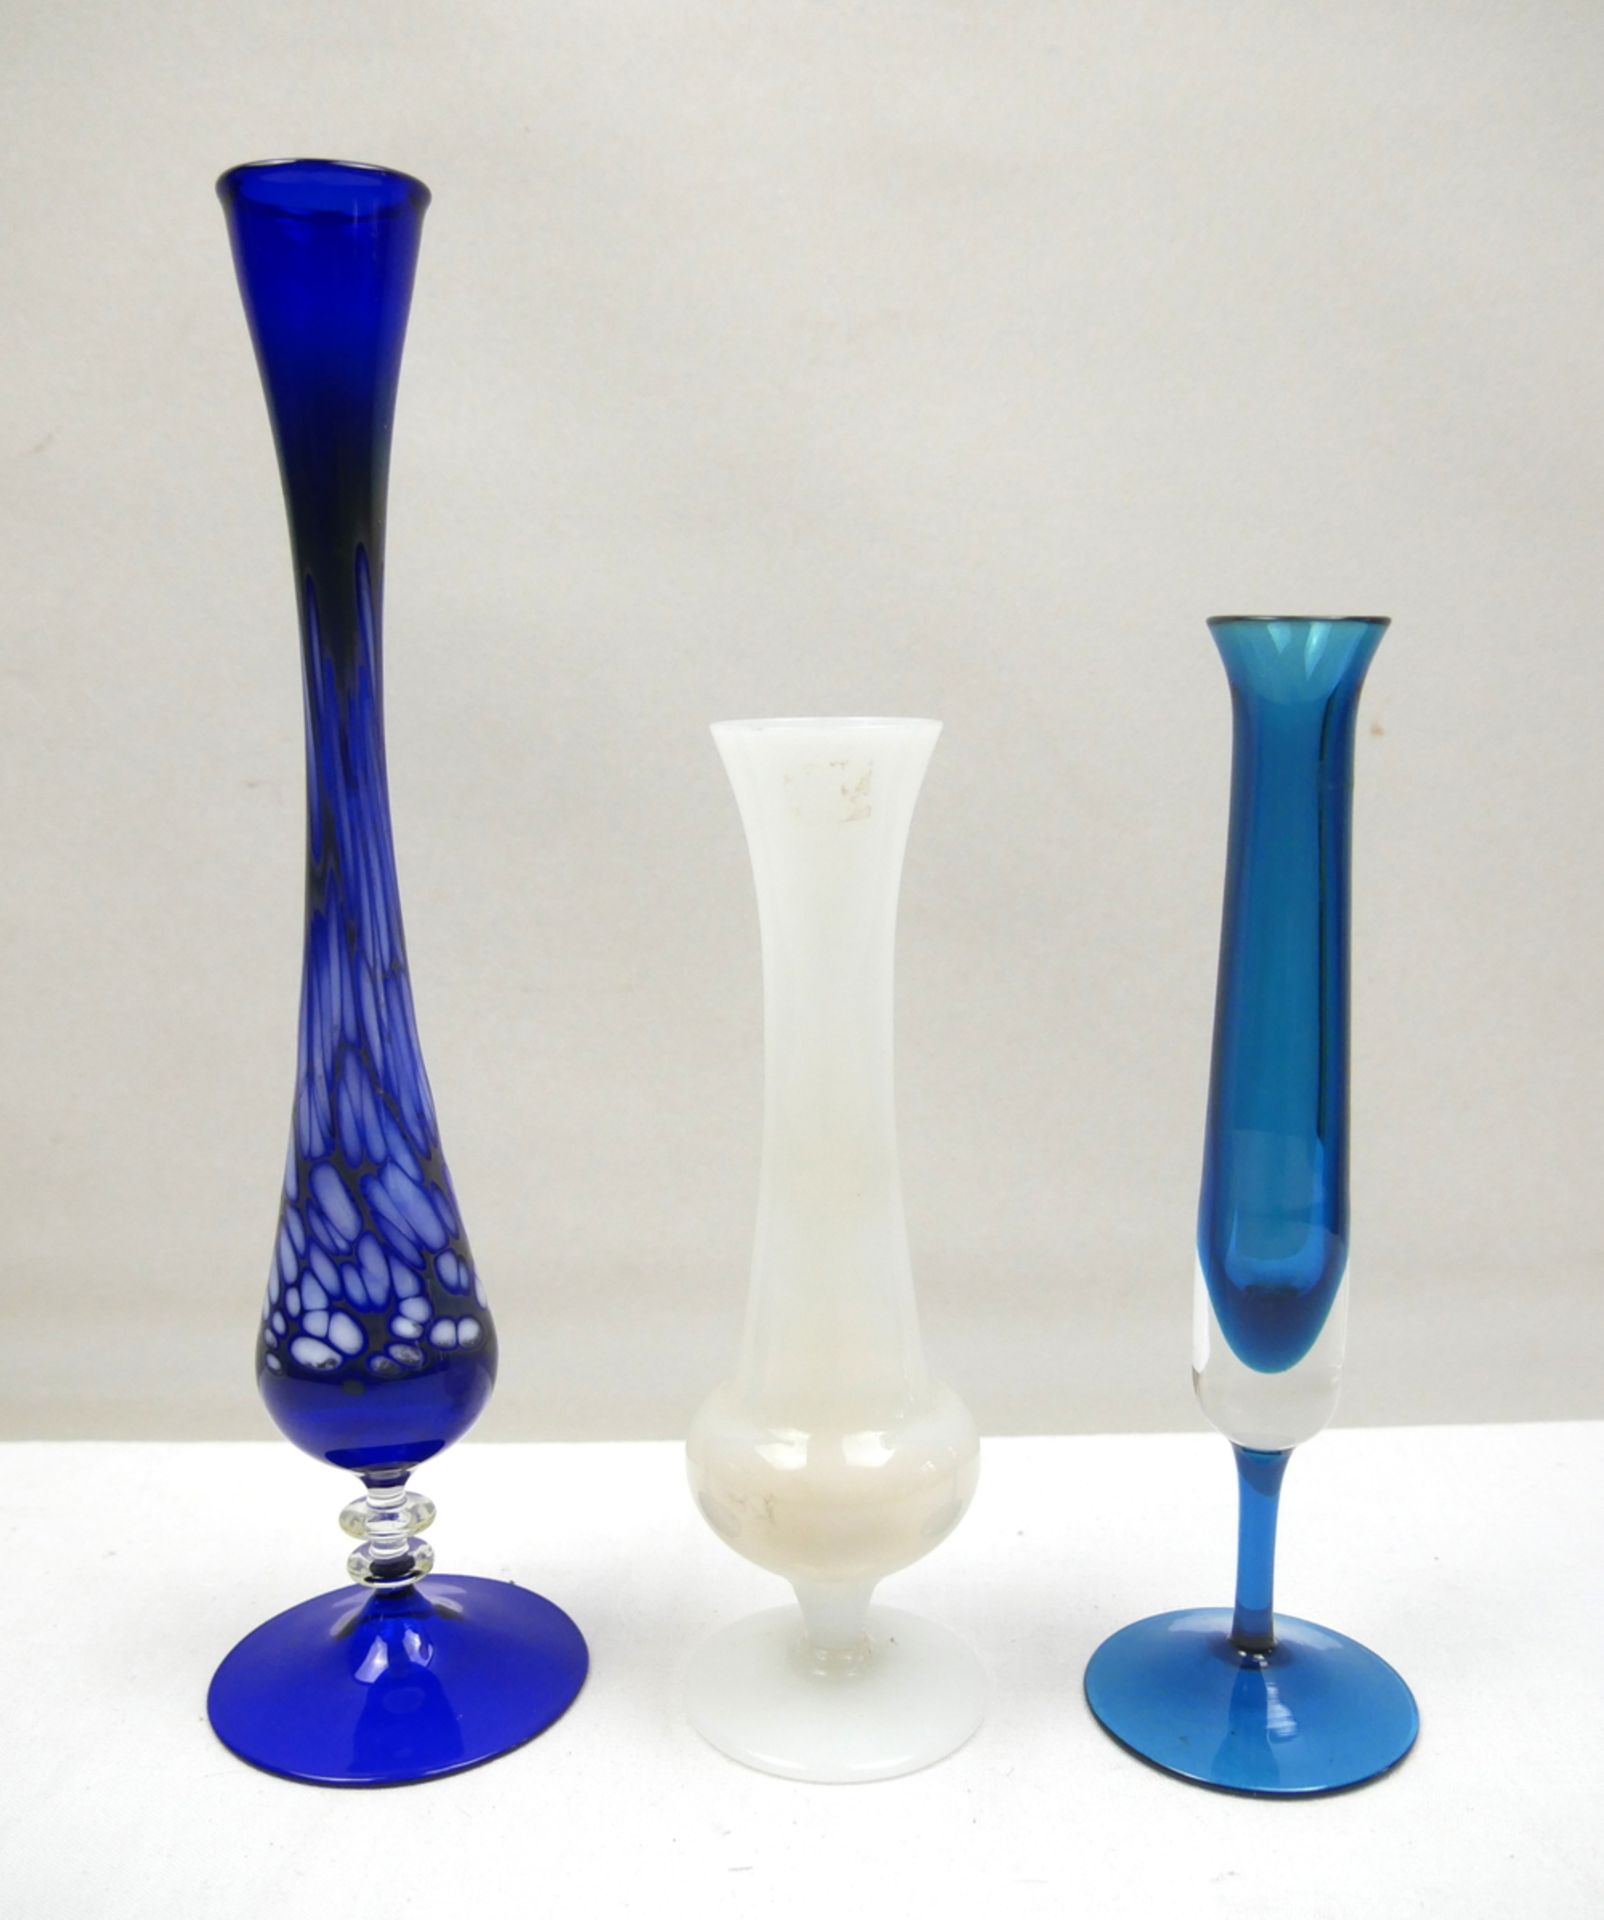 3 farbige Glasvasen, längliche Form. Verschiedene Modelle.